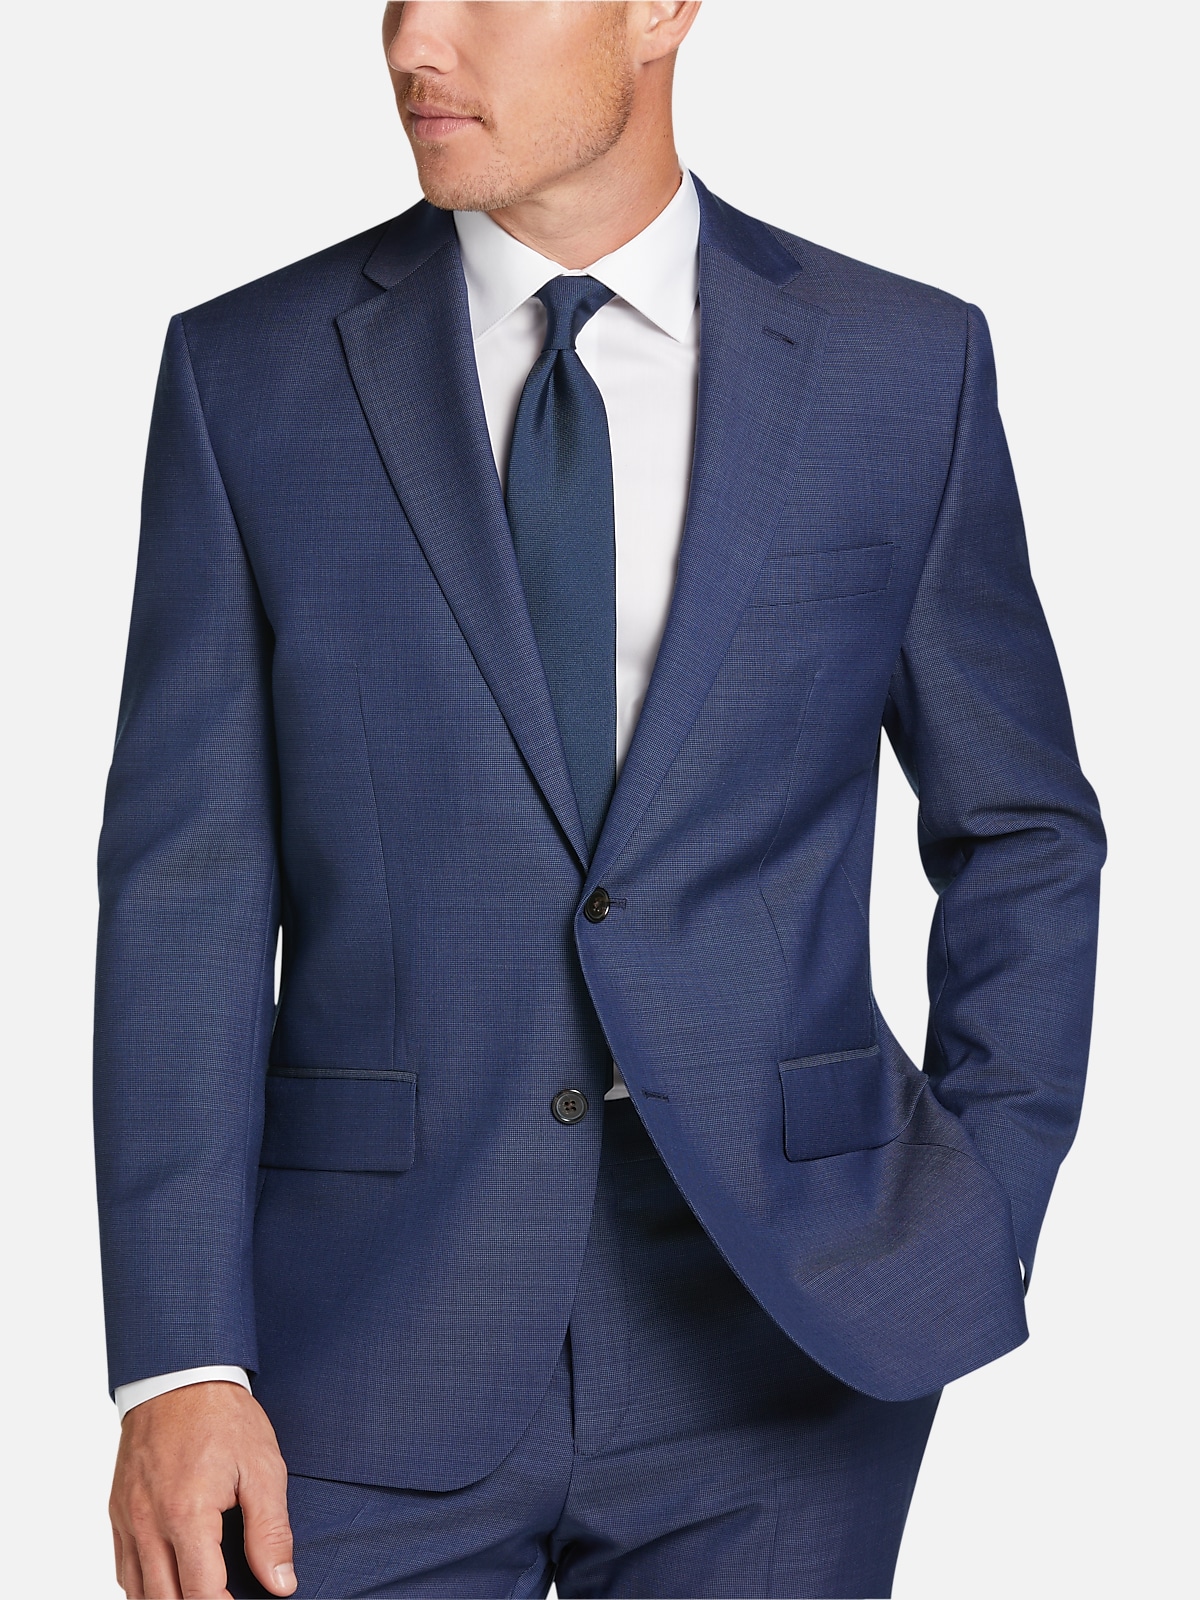 Lauren By Ralph Lauren Classic Fit Suit Tic | All Clearance $39.99| Men ...